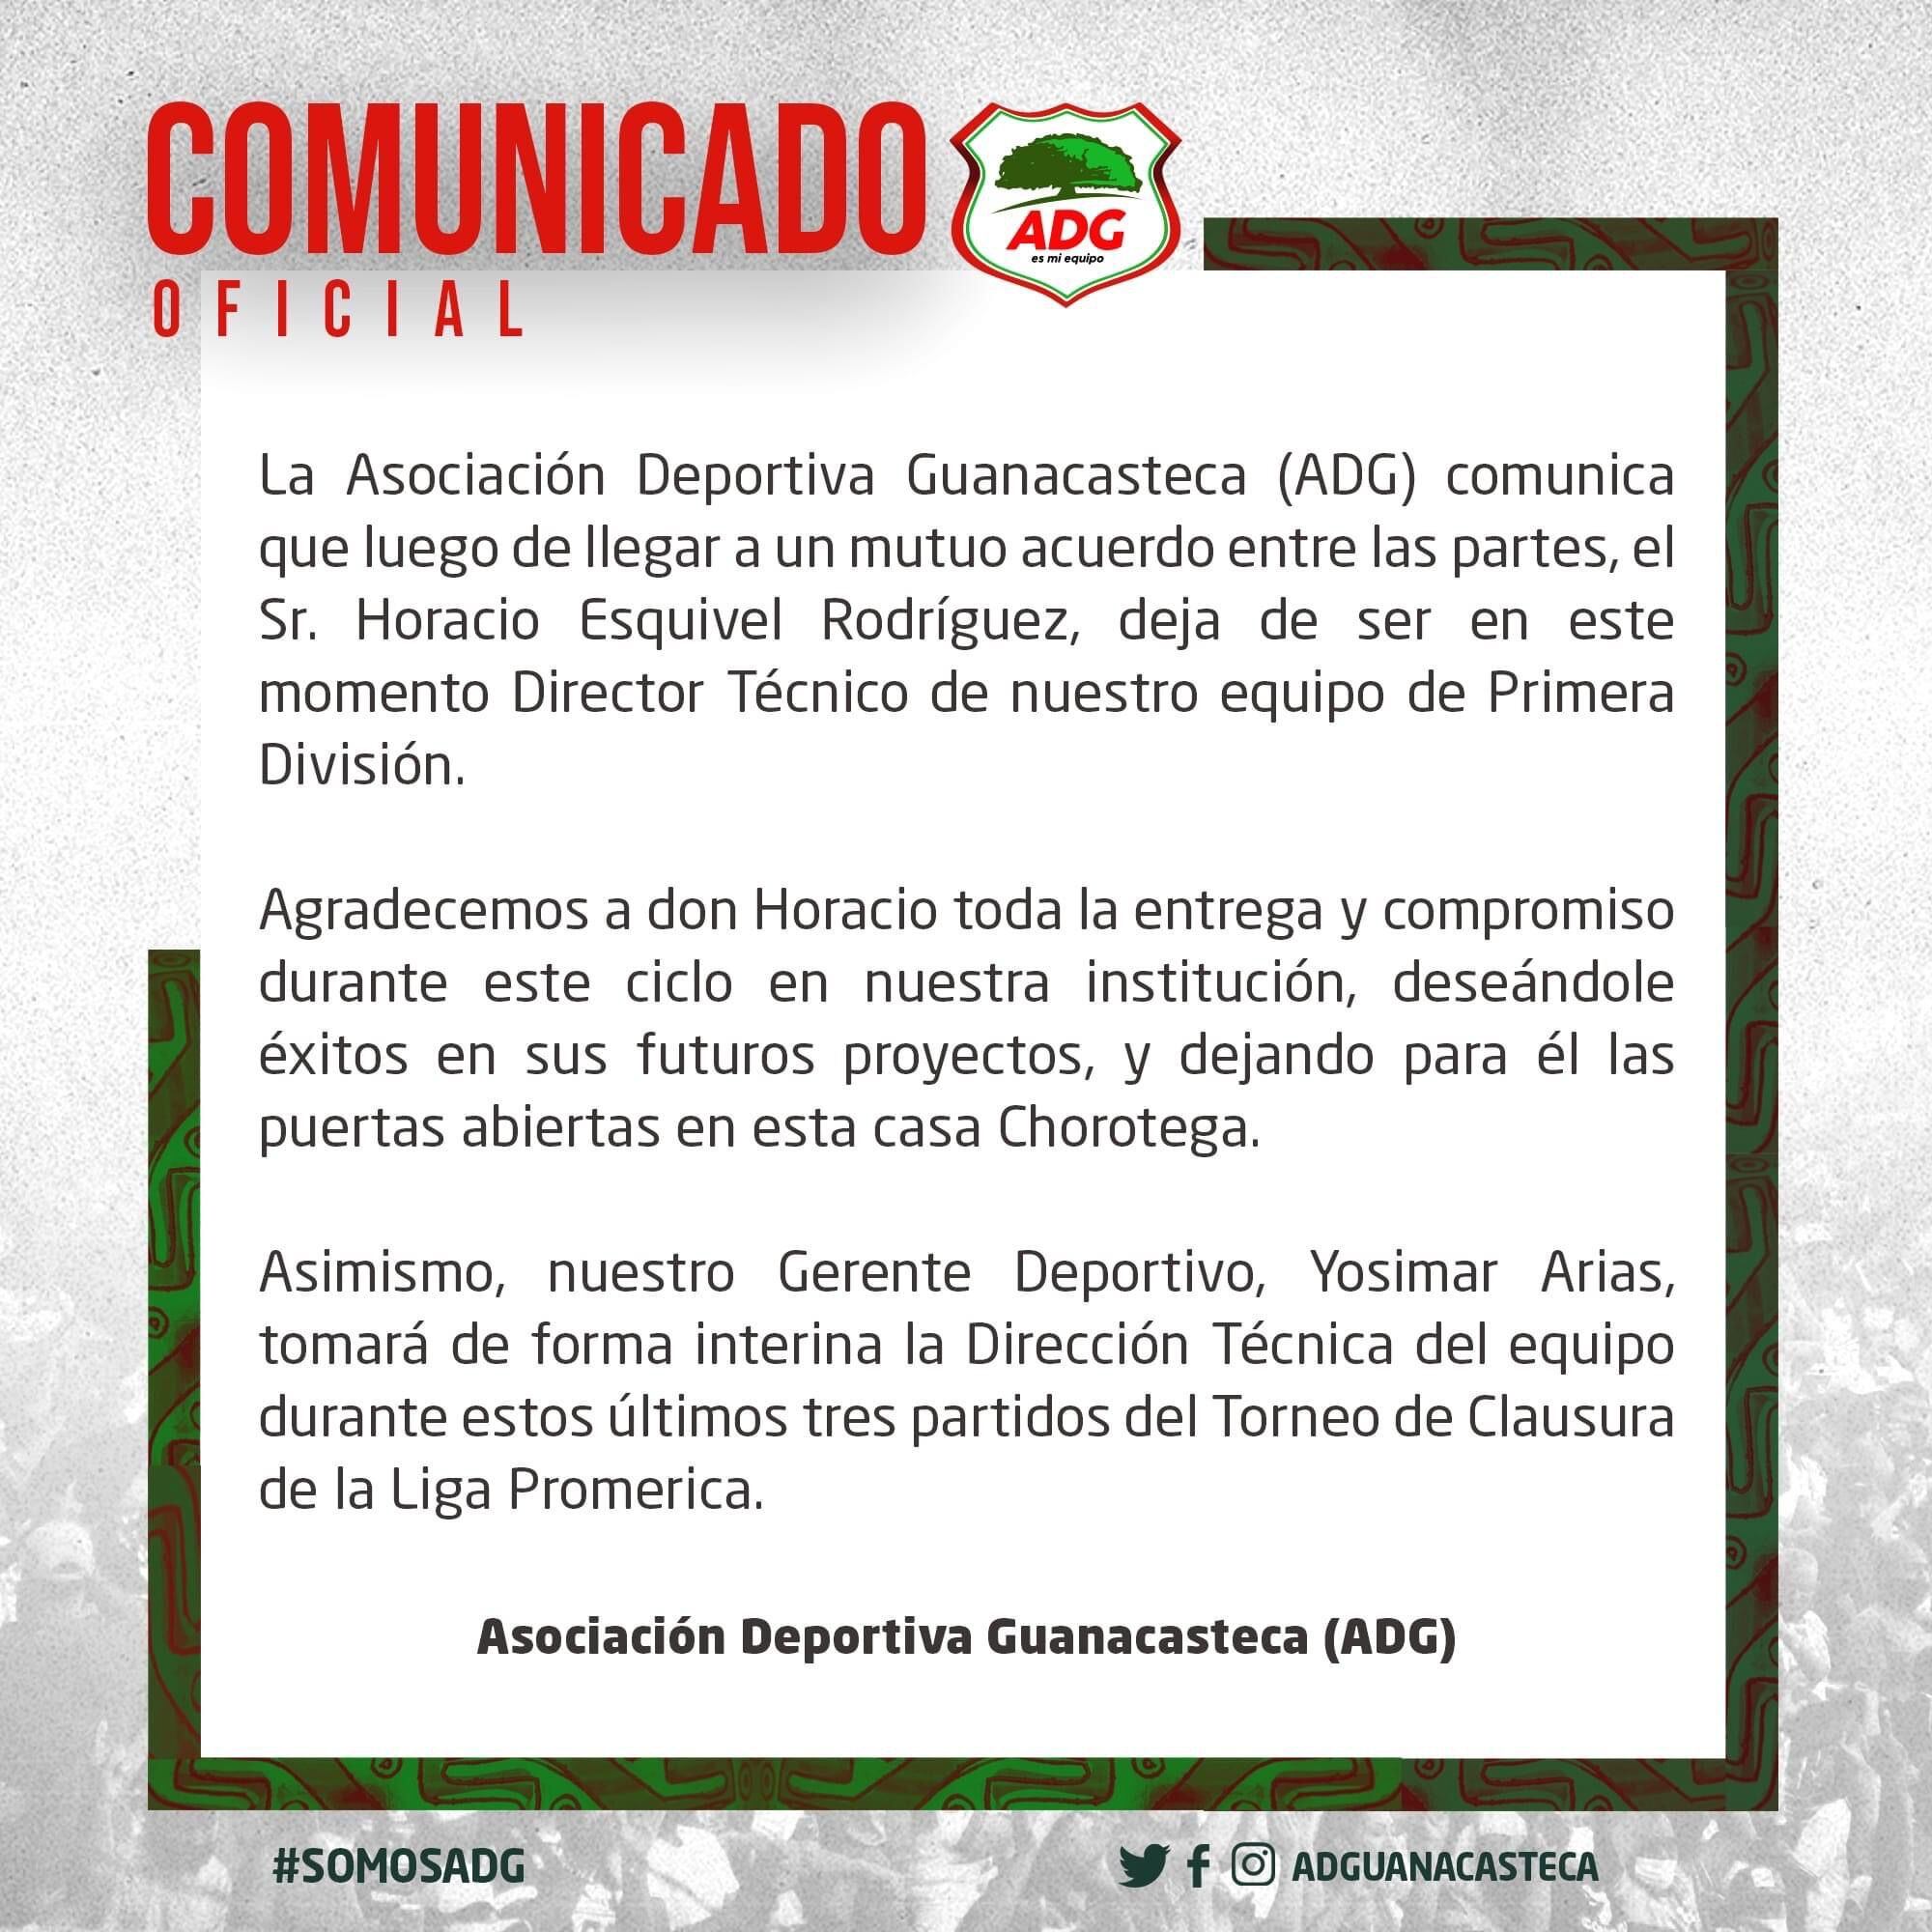 Este fue el comunicado que la Asociación Deportiva Guanacasteca, dio a conocer en sus redes sociales, para informar sobre la salida de Horacio Esquivel.